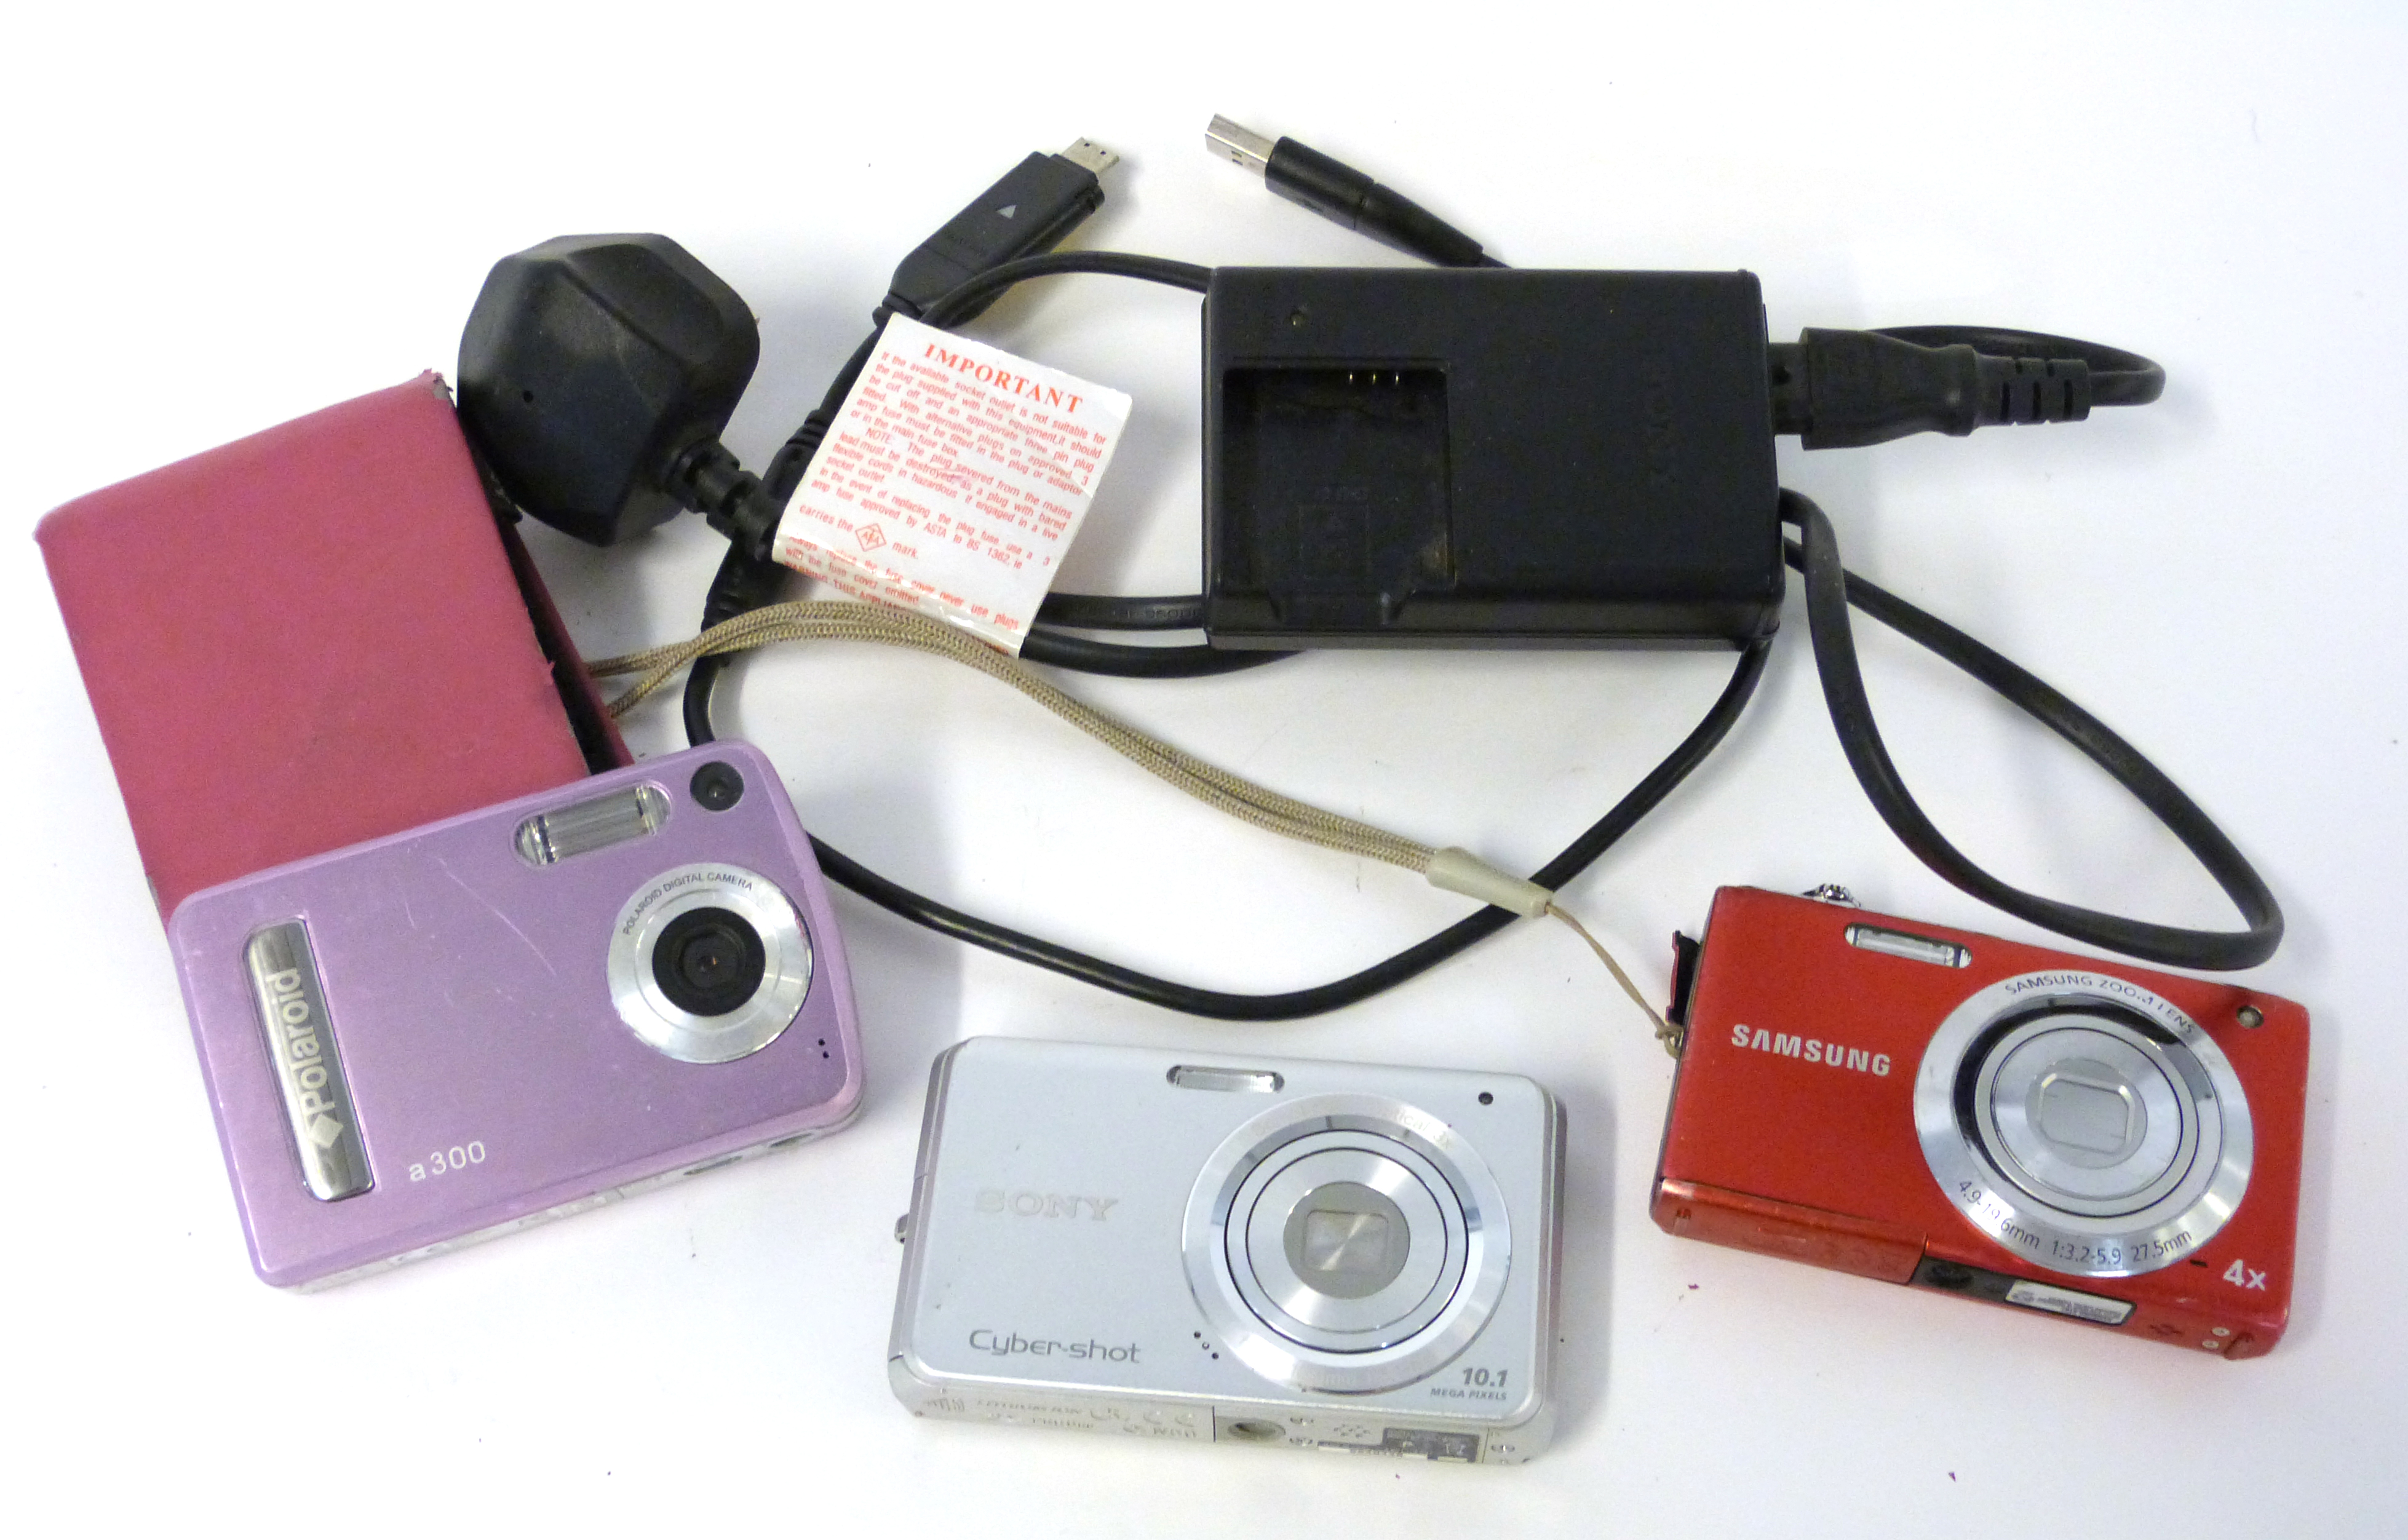 Samsung ST61 digital camera, a Sony DSC-W180 digital camera with a Polaroid A300 digital camera - Image 2 of 3